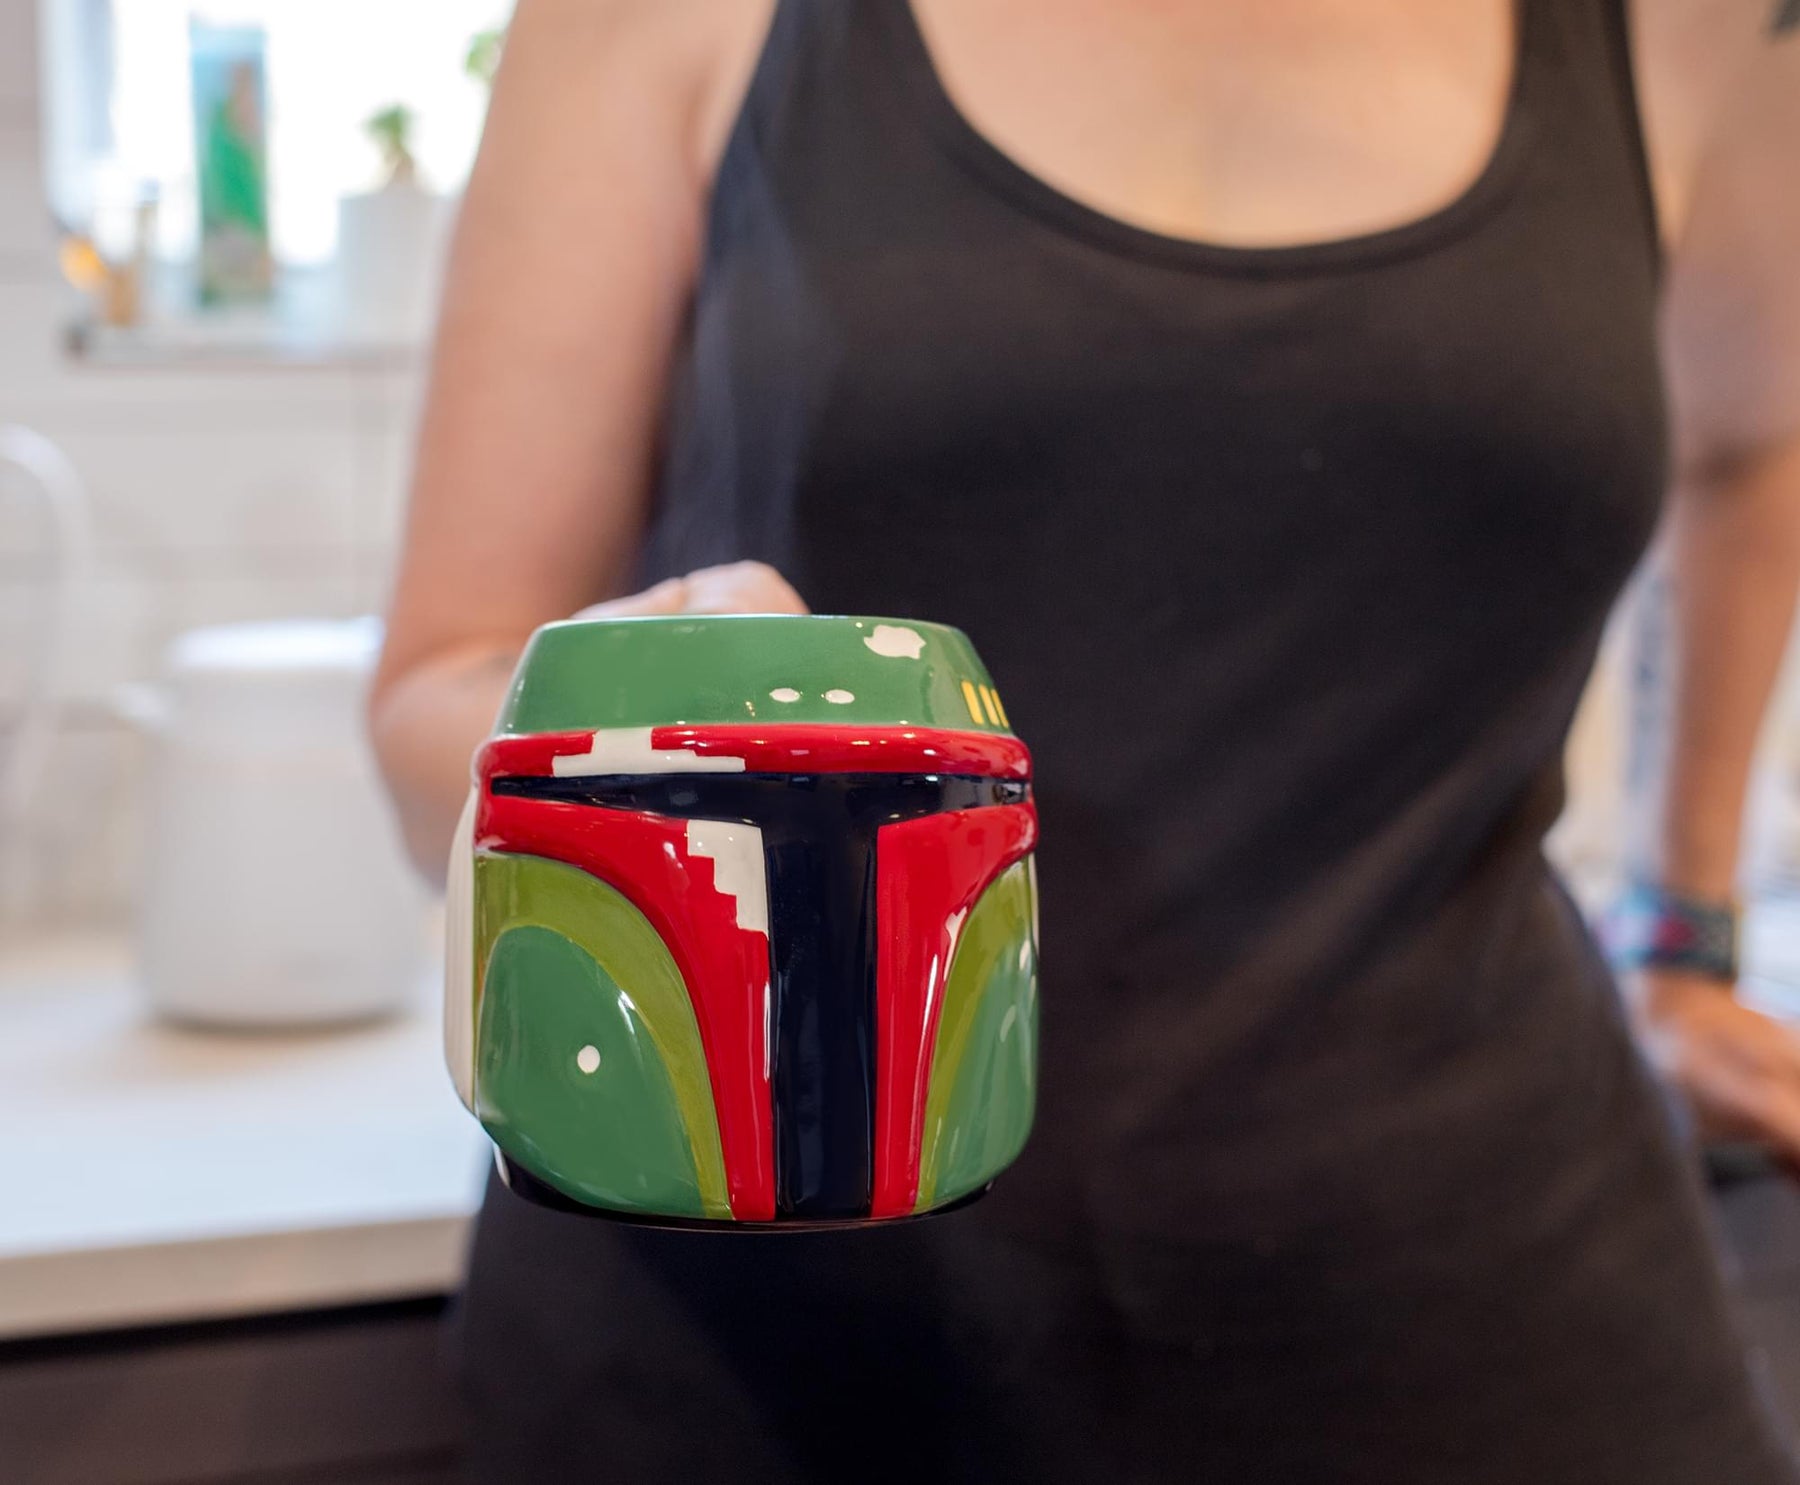 Star Wars Boba Fett Sculpted Ceramic Mug